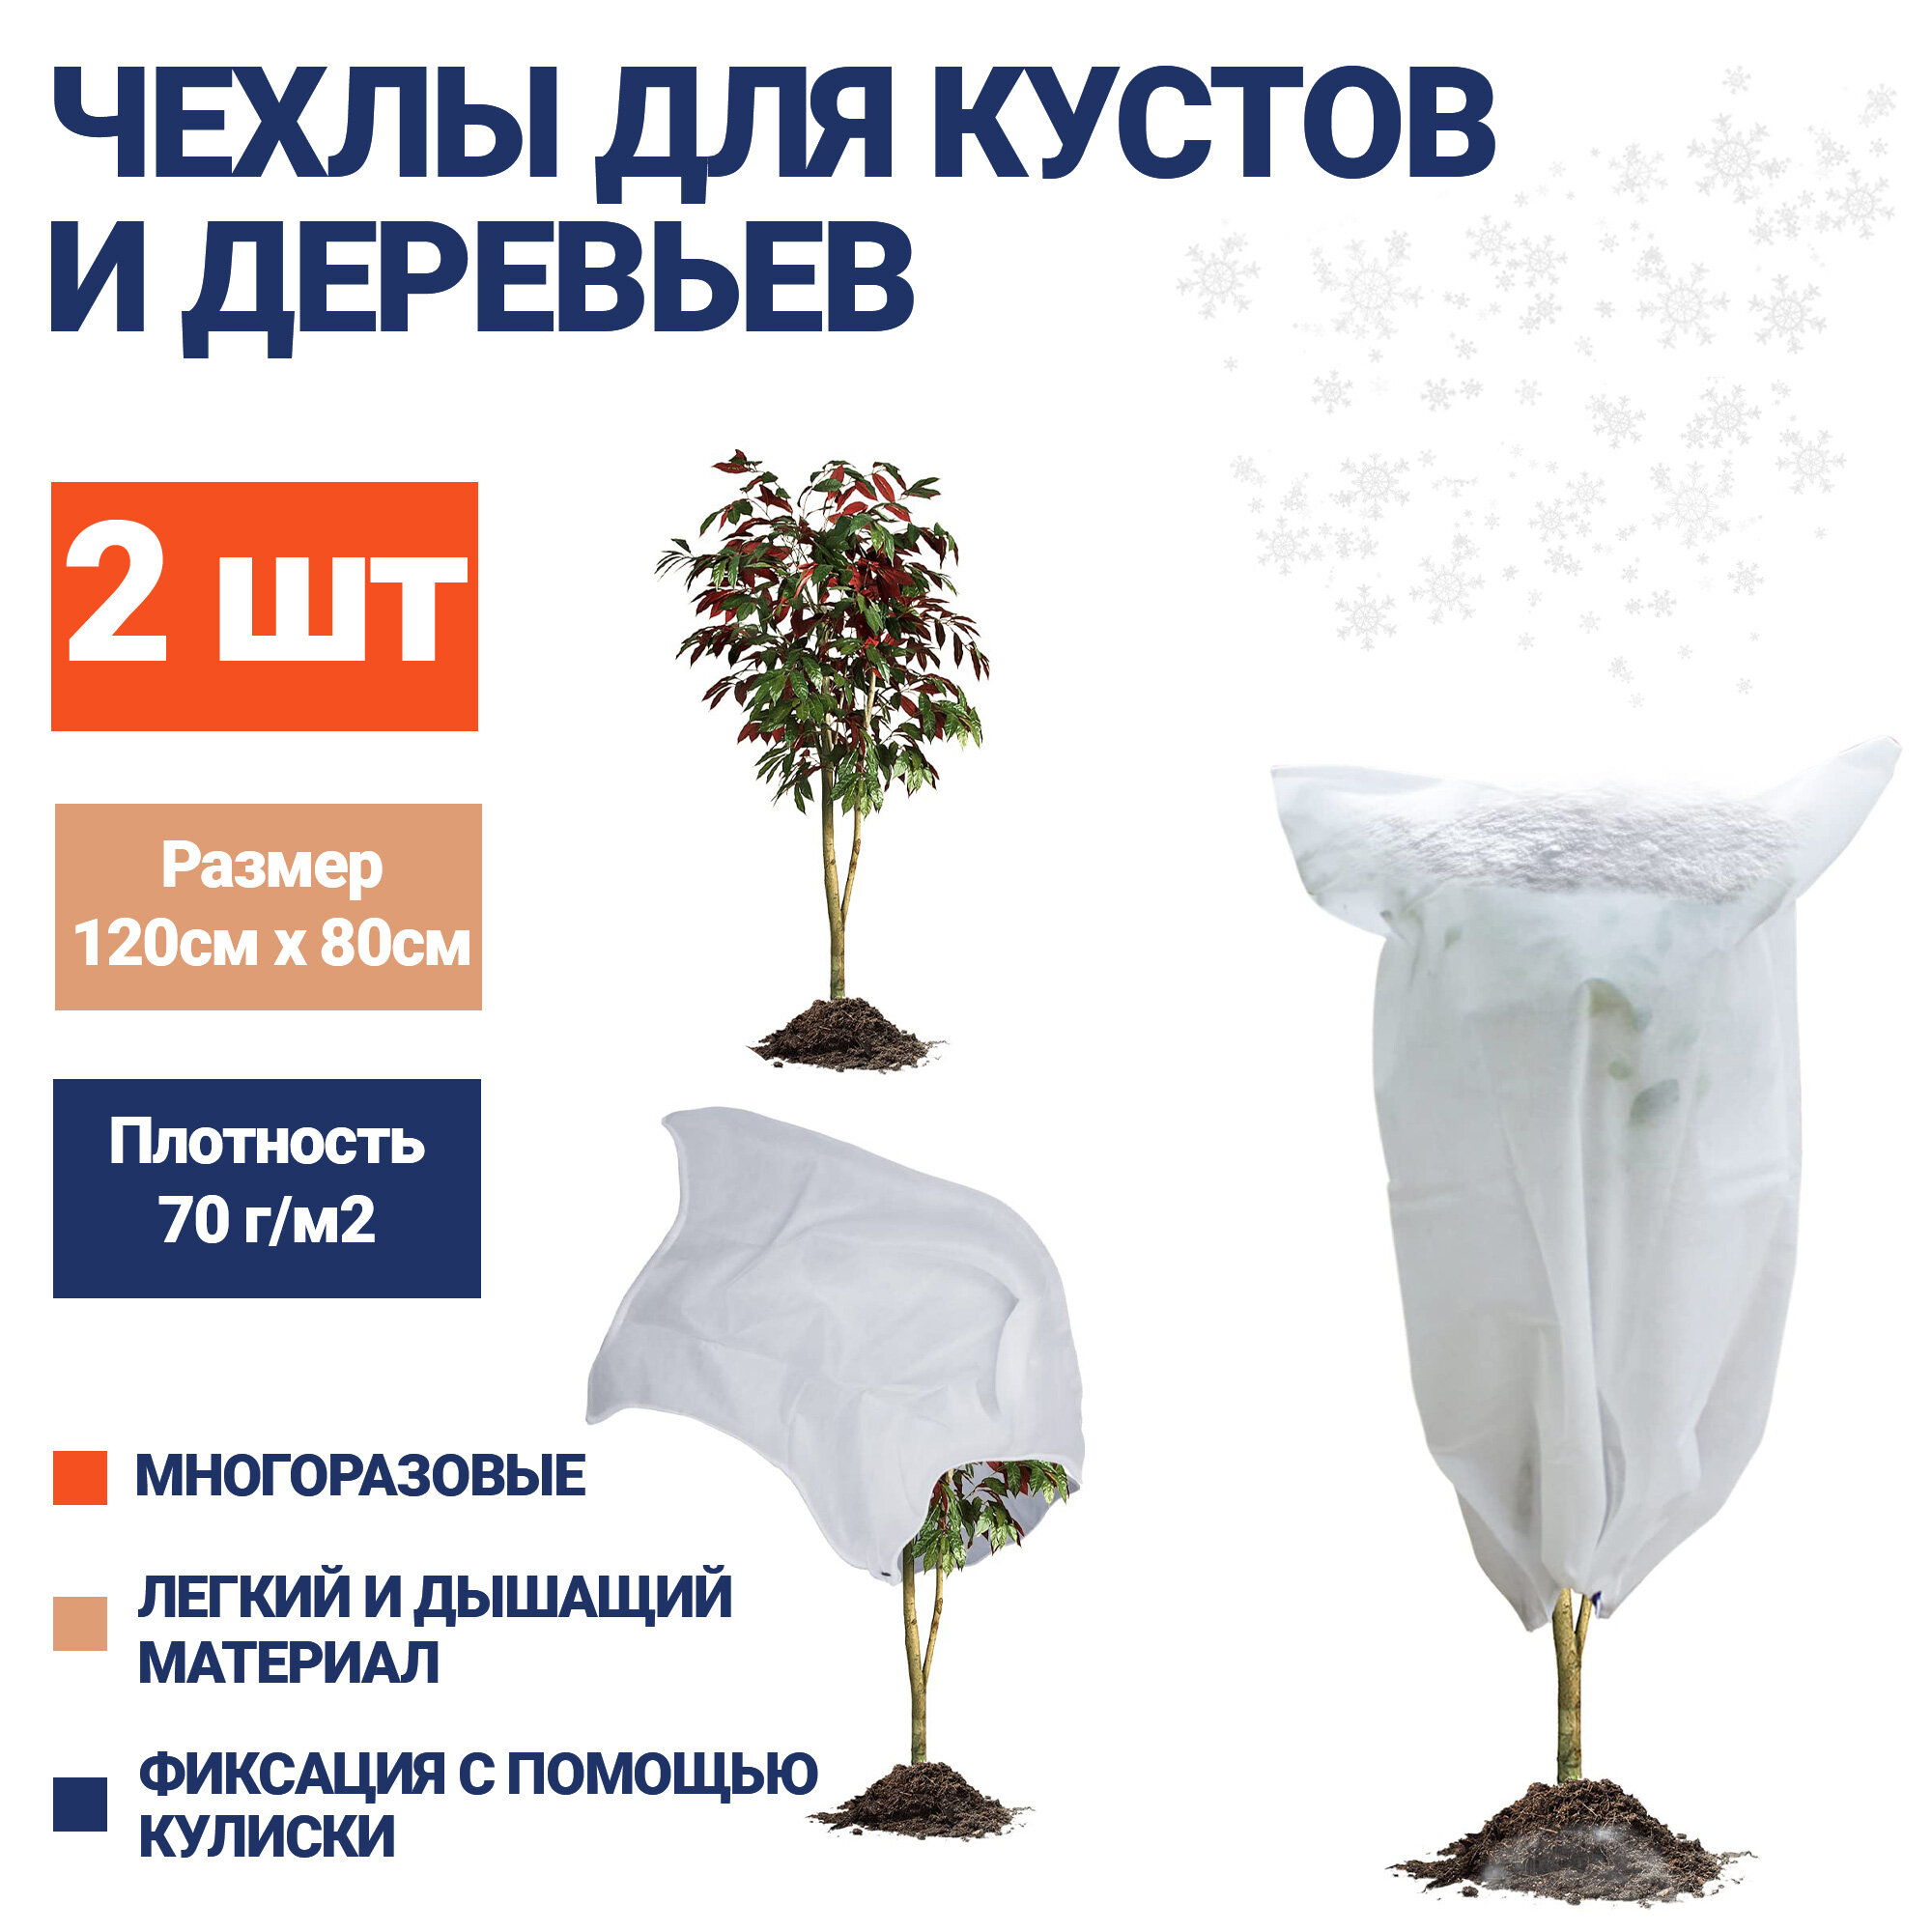 Чехол для укрытия растений на зиму 2шт, 120х80см, EZGOODZ. Нетканый укрывной материал спанбонд, зимний геотекстиль для роз, туй, защита от мороза